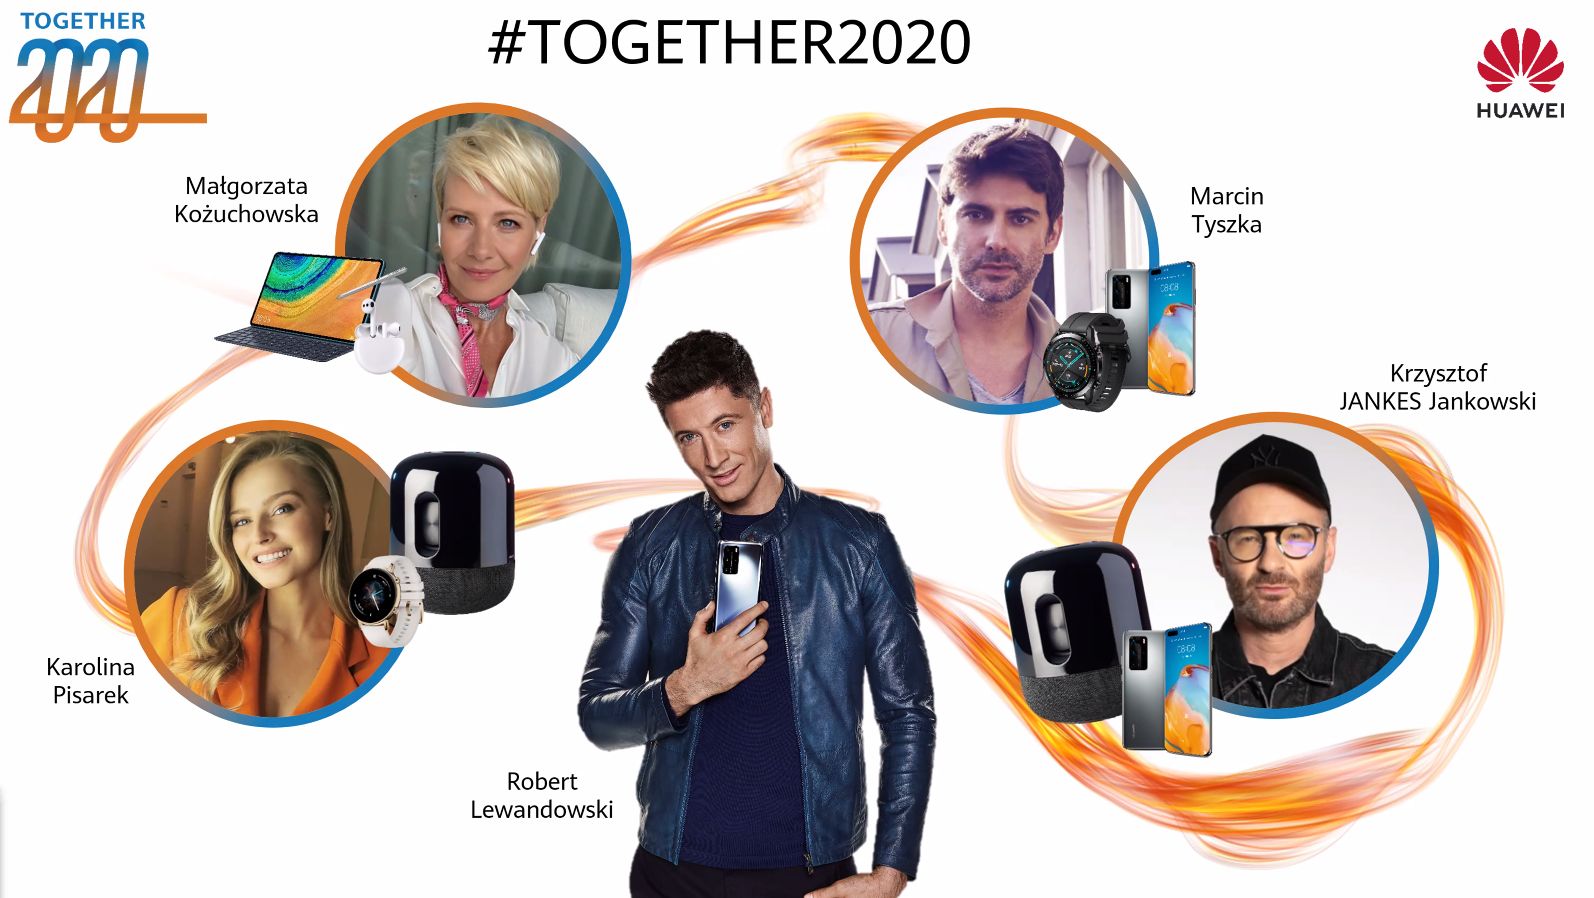 Kożuchowska, Pisarek, Tyszka, Jankes i ambasador Huawei Lewandowski w najnowszej kampanii Together 2020